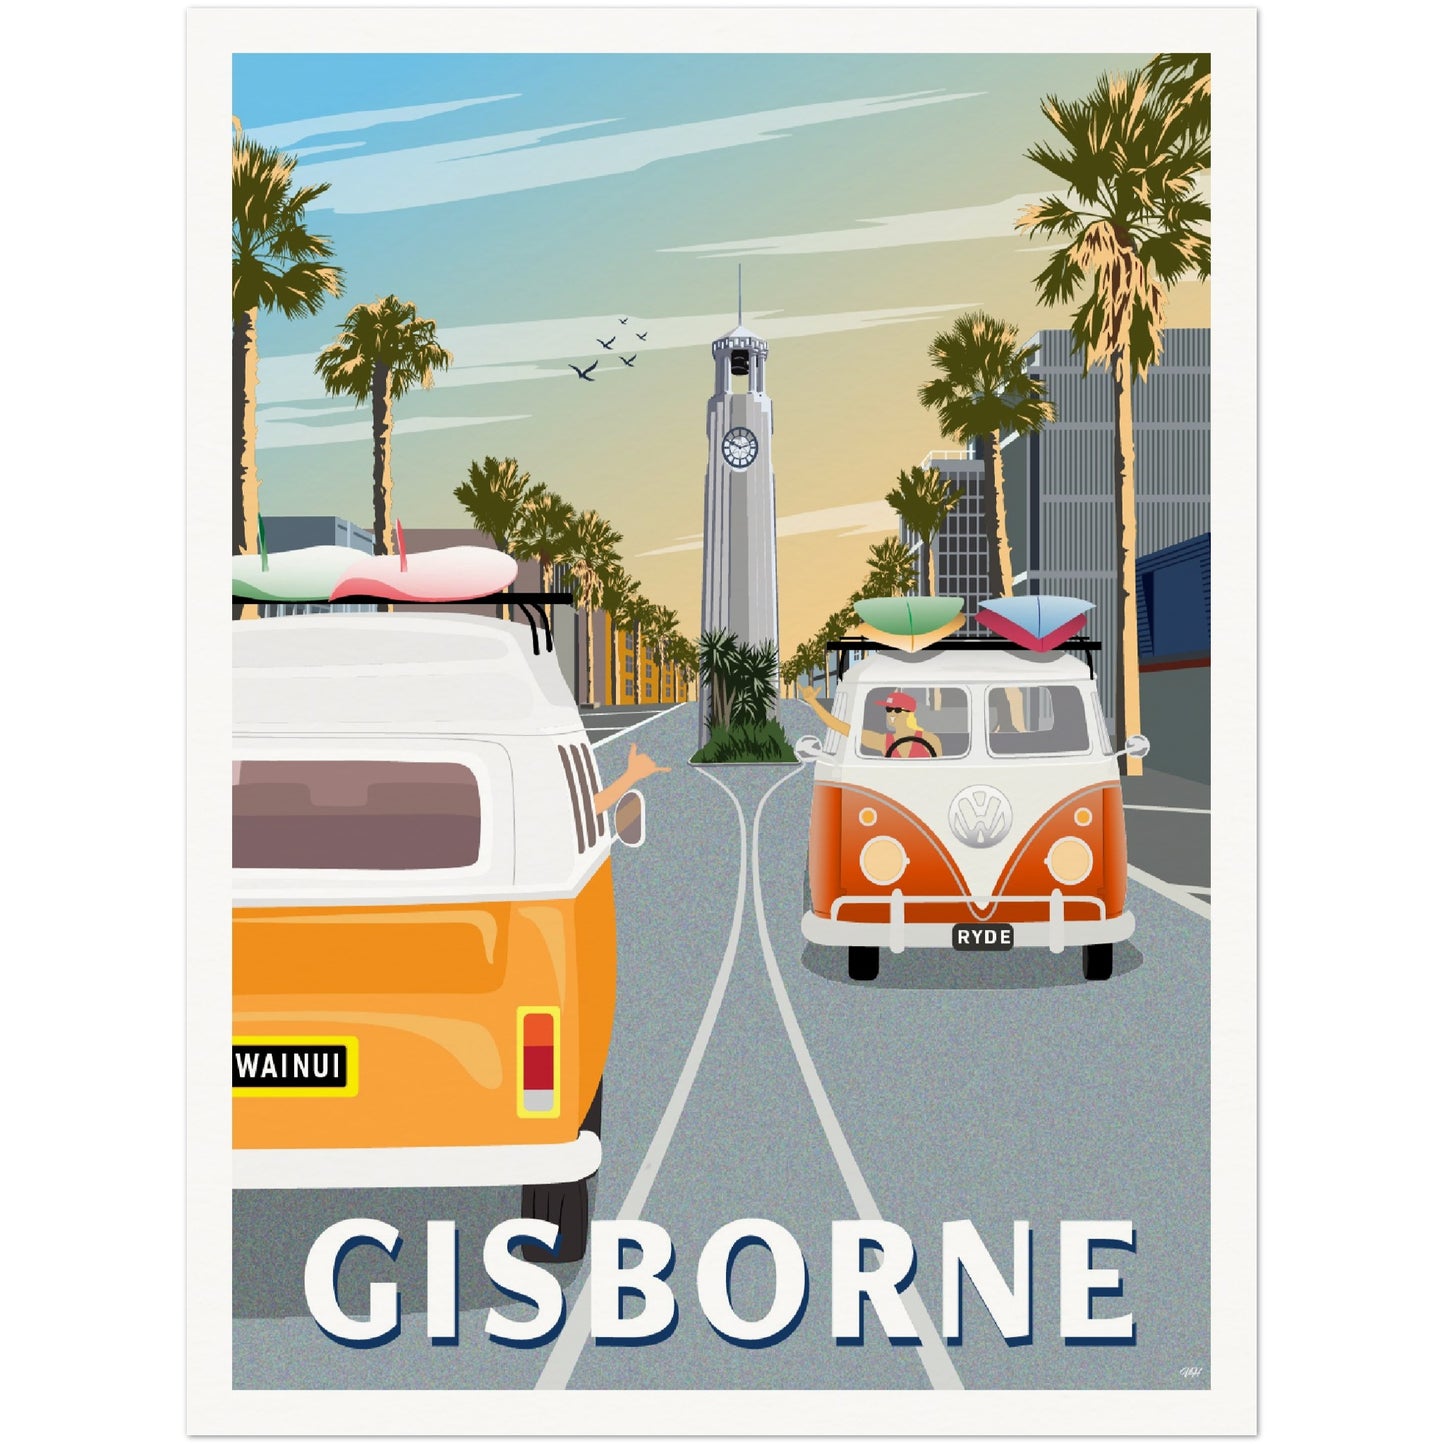 Gisborne Travel Poster, New Zealand